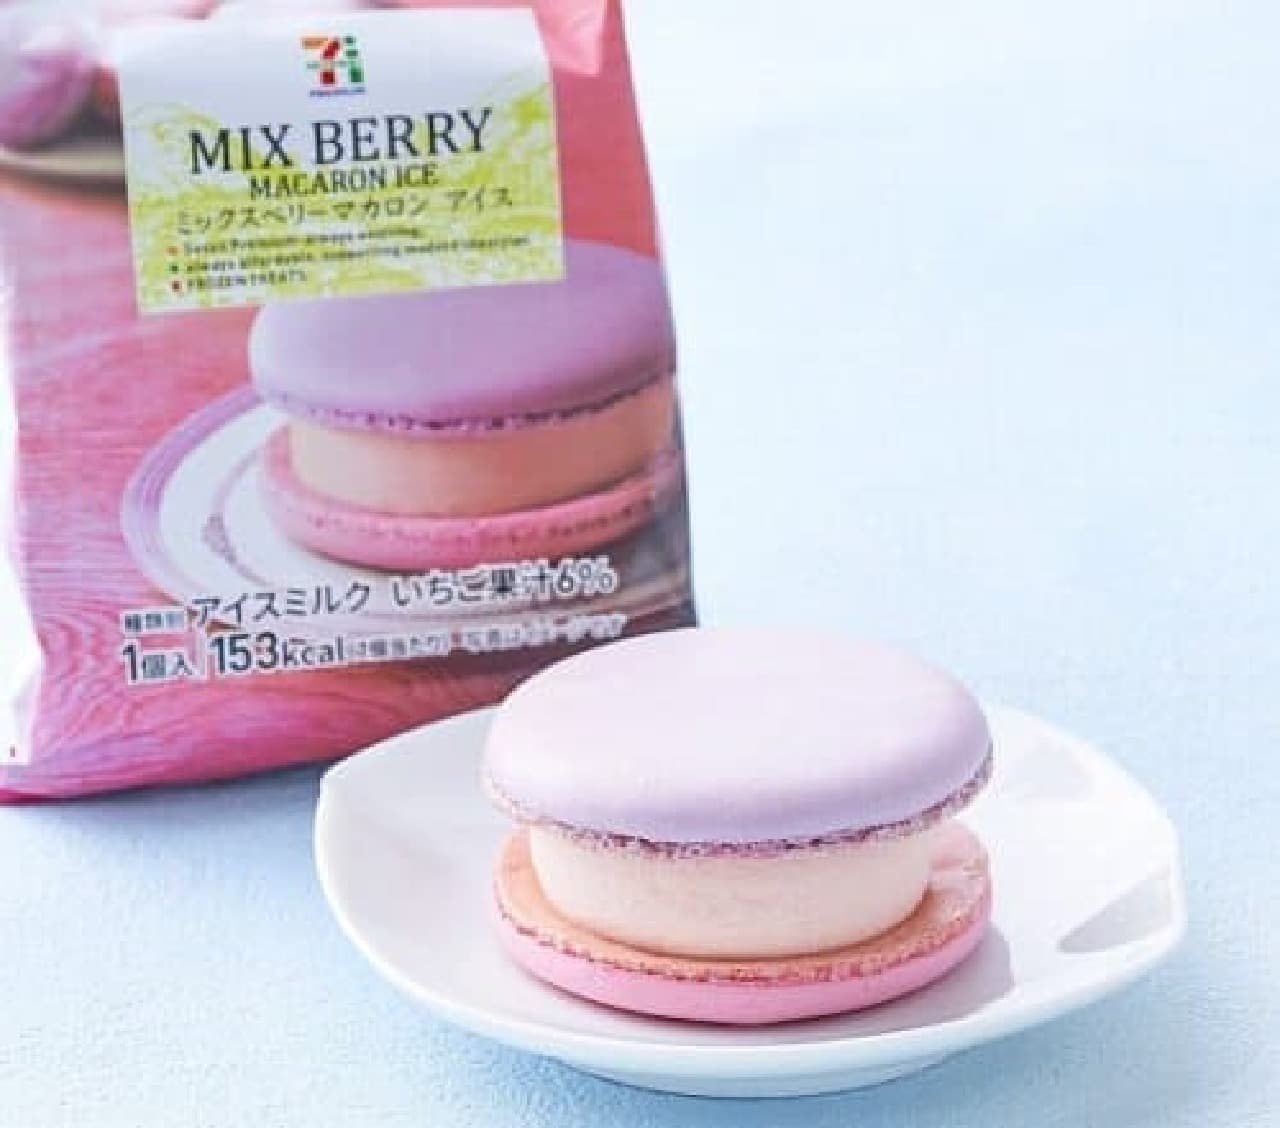 7-ELEVEN Premium Mixed Berry Macaron Ice